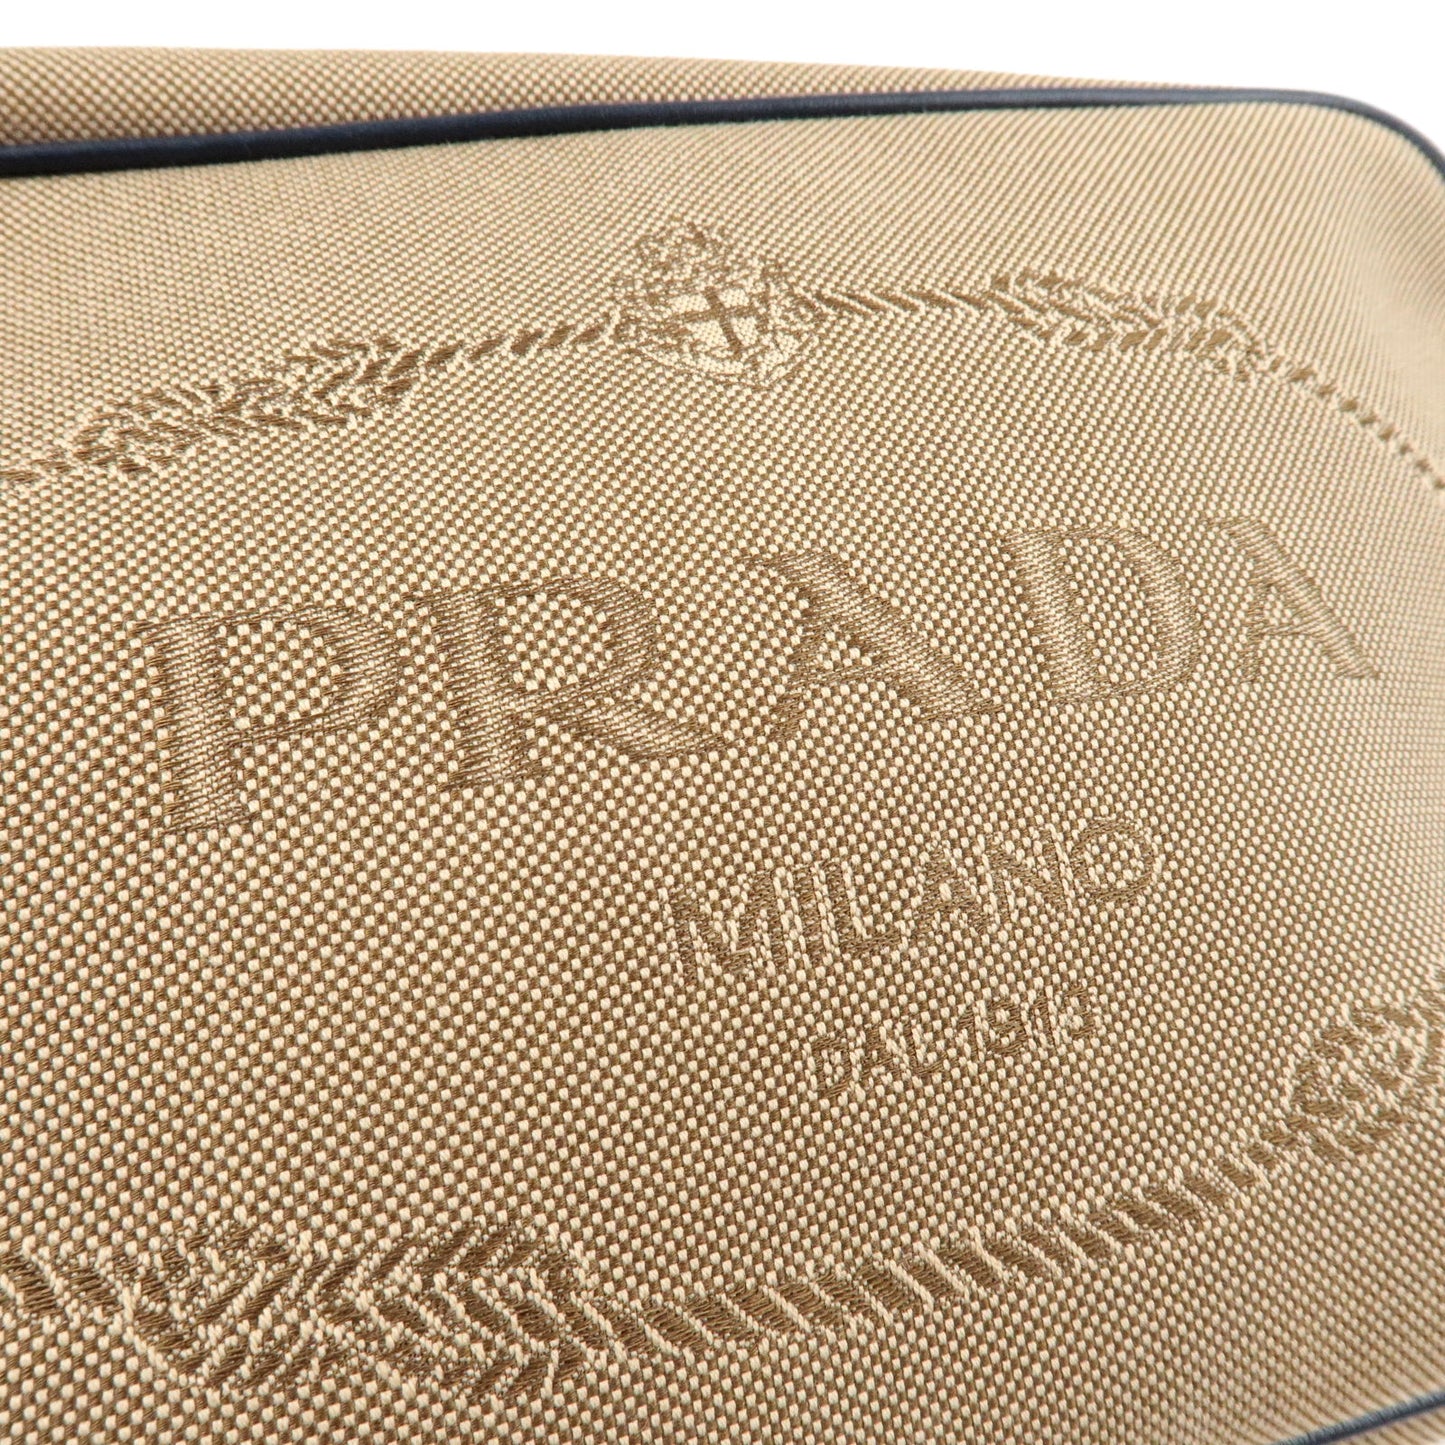 PRADA Logo Jacquard Leather Shoulder Bag Beige Navy 1BH089